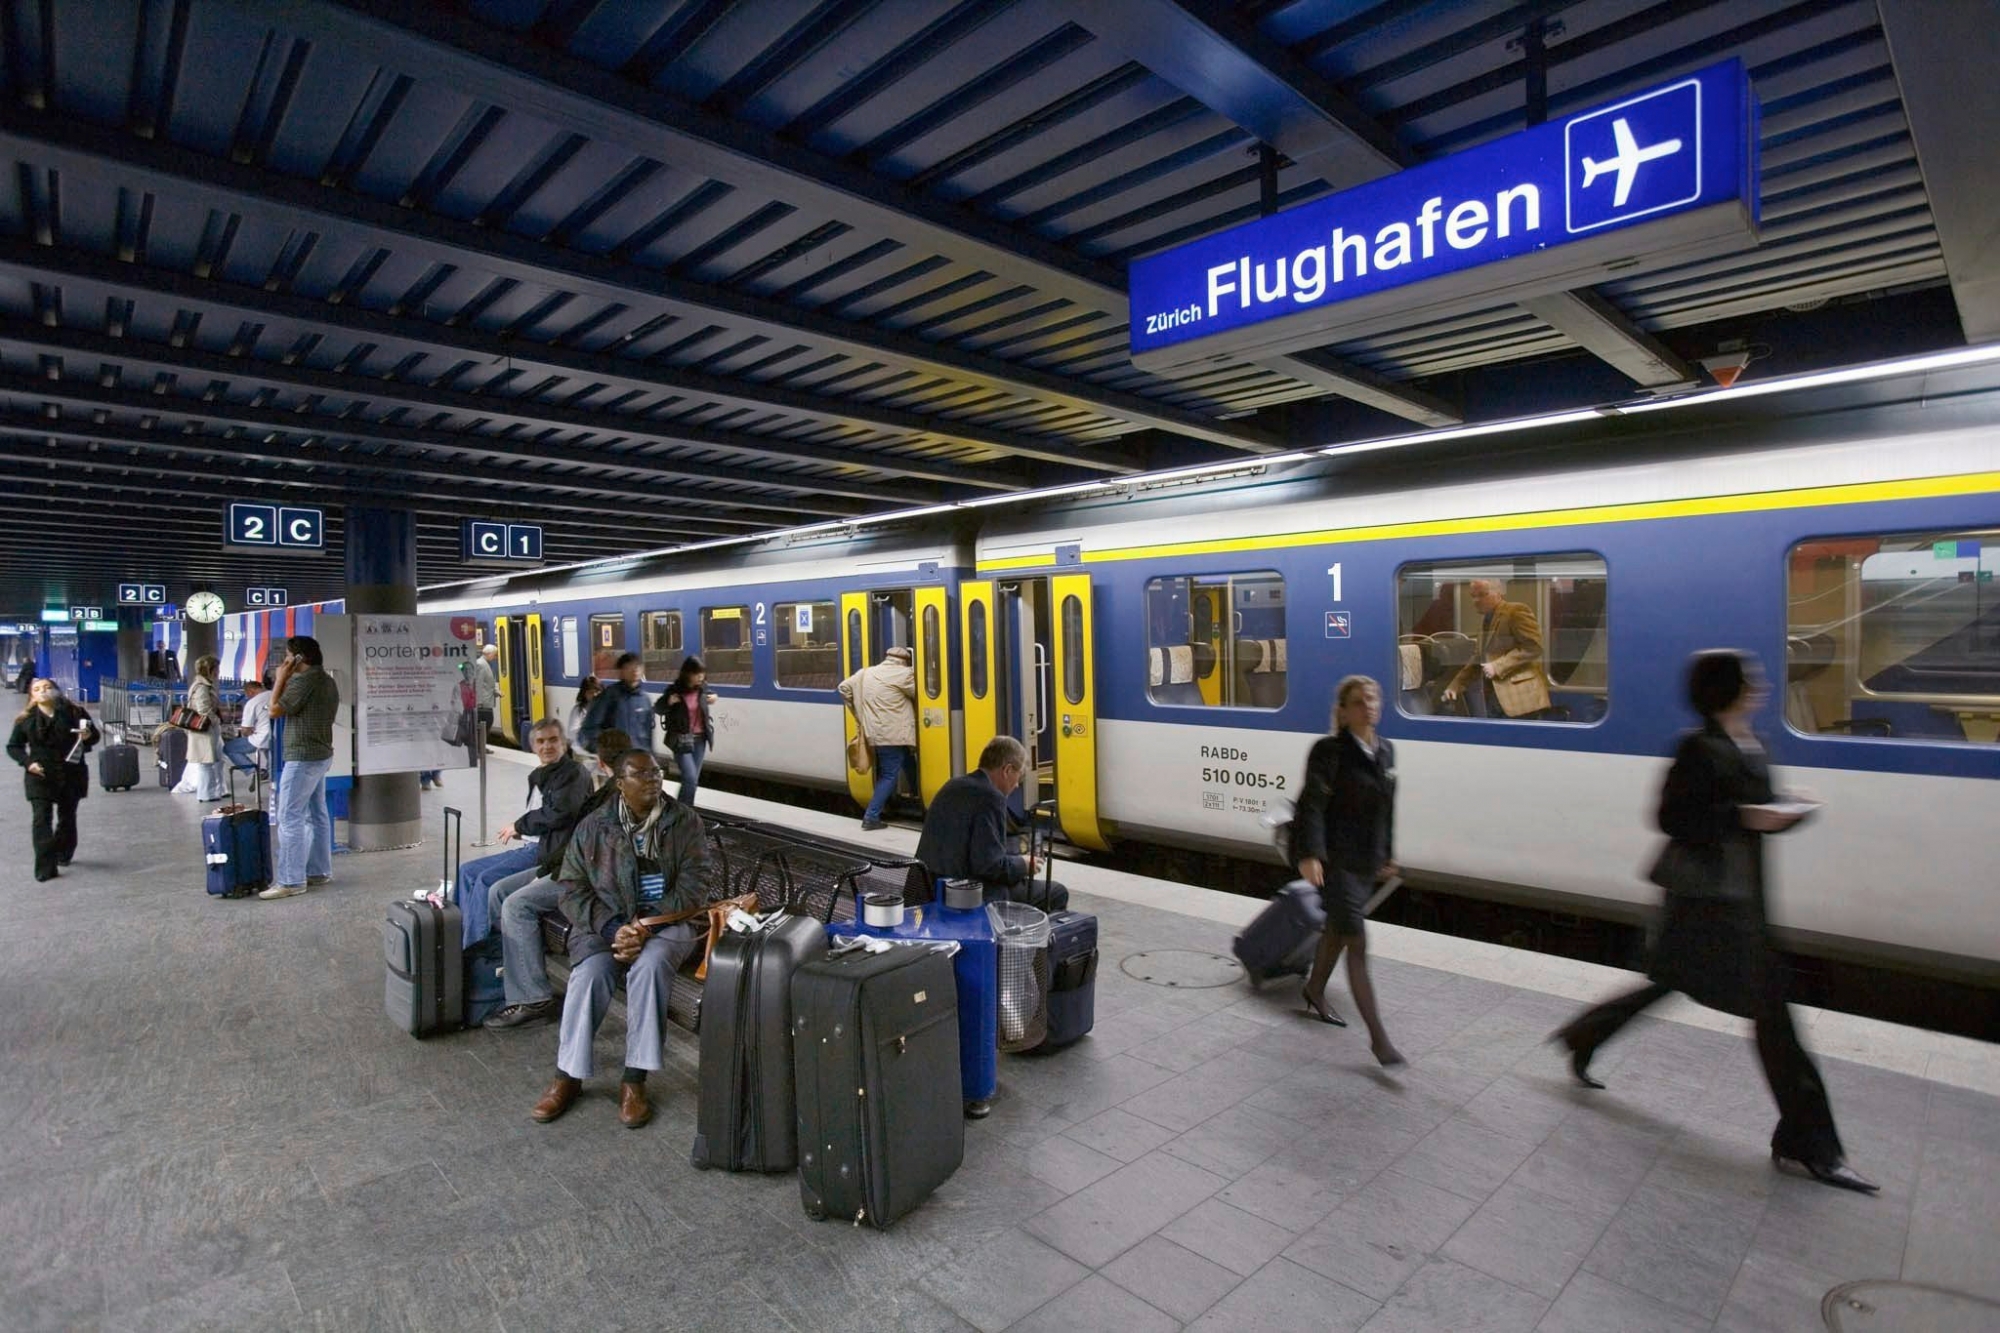 HINTERGRUND - 25 JAHRE BAHNHOF FLUGHAFEN KLOTEN - BILD 9 VON 12 BILDERN - Reisende warten am 18. Mai 2005 auf dem Perron des Bahnhofs Zuerich-Flughafen auf den Zug. Am 1. Juni 1980 wurde der Flughafen Zuerich-Kloten an das Bahnnetz der SBB angeschlossen. Dank dieser Loesung, die international als vorbildlich gilt, ist der Anteil der mit der Bahn anreisenden Fluggaeste sehr hoch. (KEYSTONE/Martin Ruetschi)  === NO SALES, NO ARCHIVES ===
 SCHWEIZ KLOTEN FLUGHAFEN BAHNHOF (9/12)